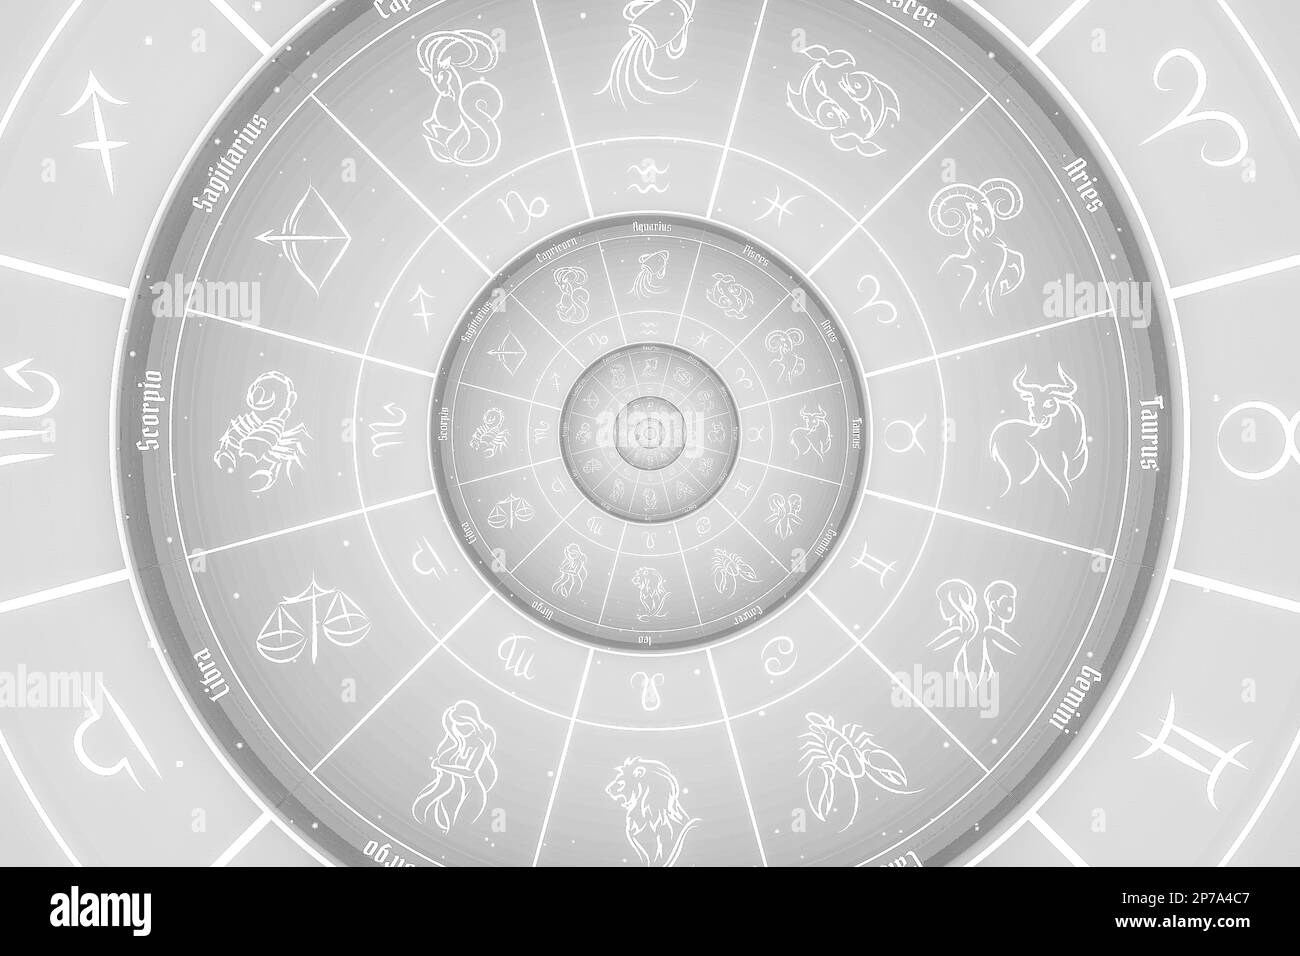 Illustration d'arrière-plan du signe d'astrologie et d'alchimie - blanc Banque D'Images